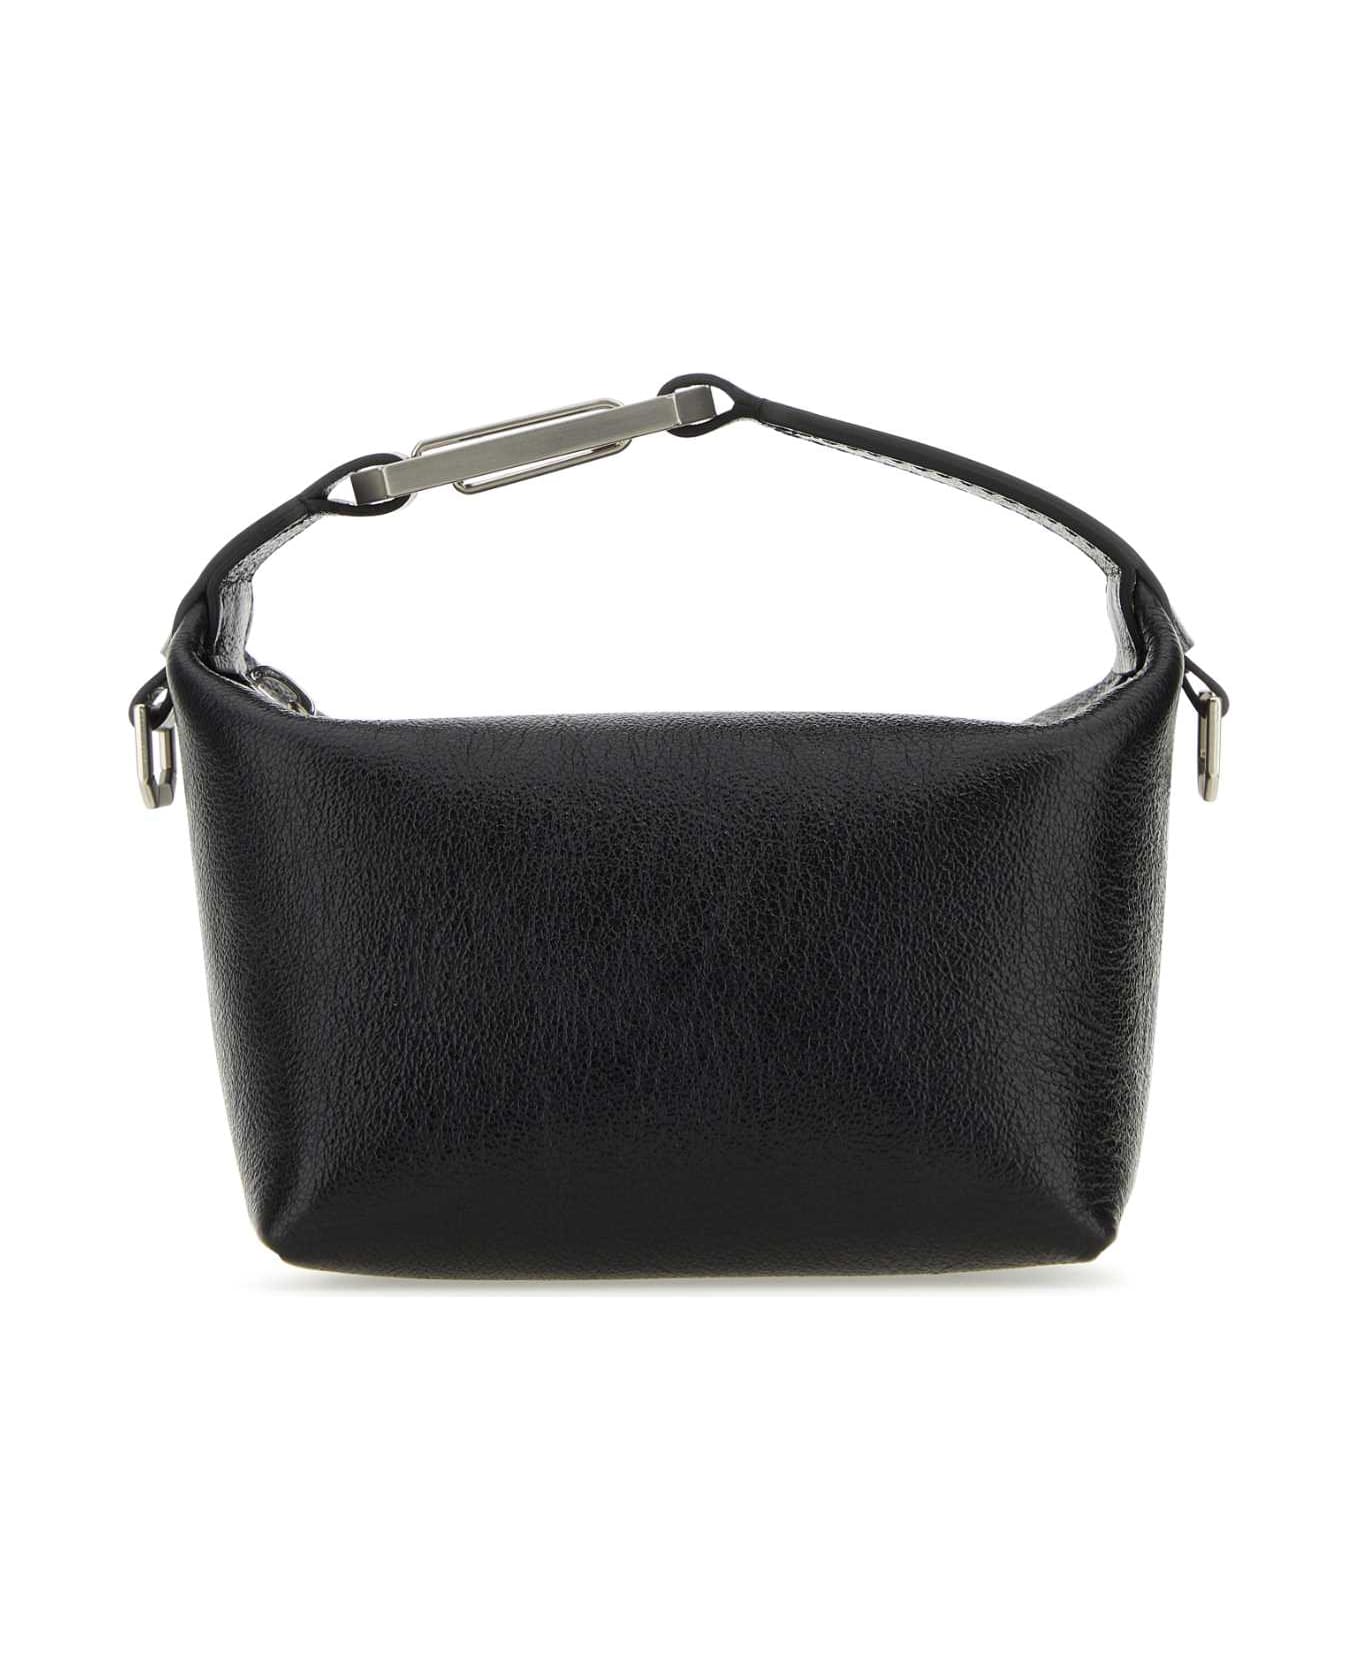 EÉRA Black Leather Moonbag Handbag - BLACK トートバッグ